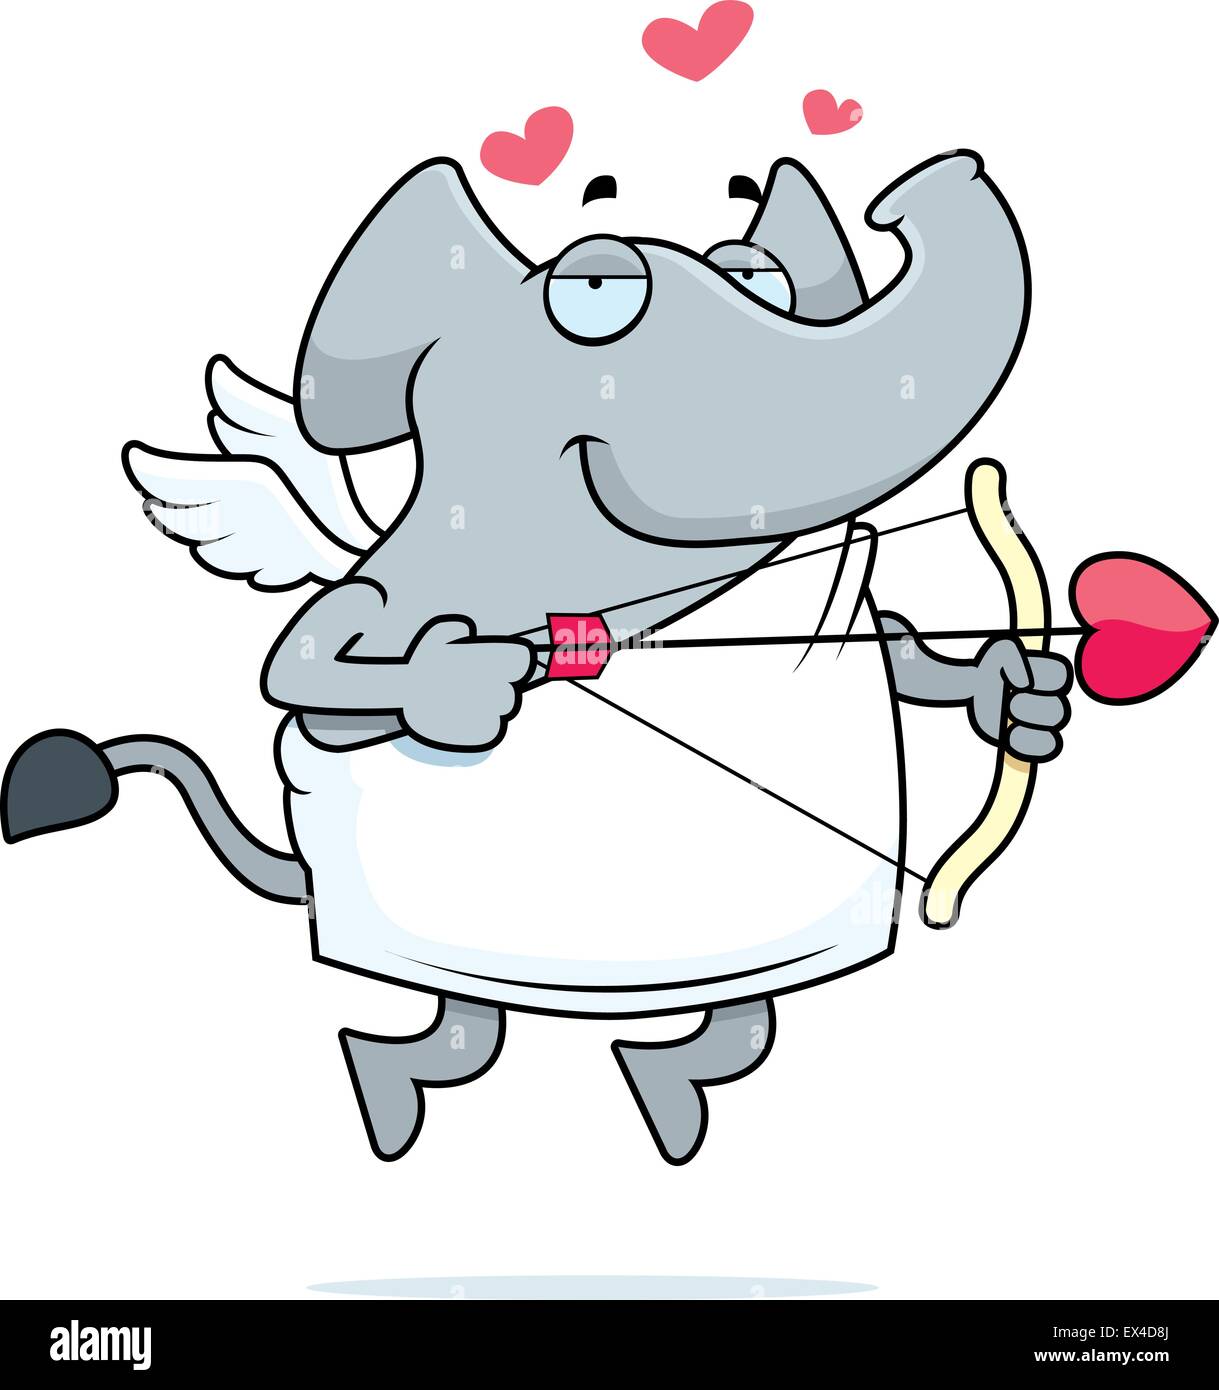 A happy cartoon elephant cupid with a bow and arrow. Stock Vector